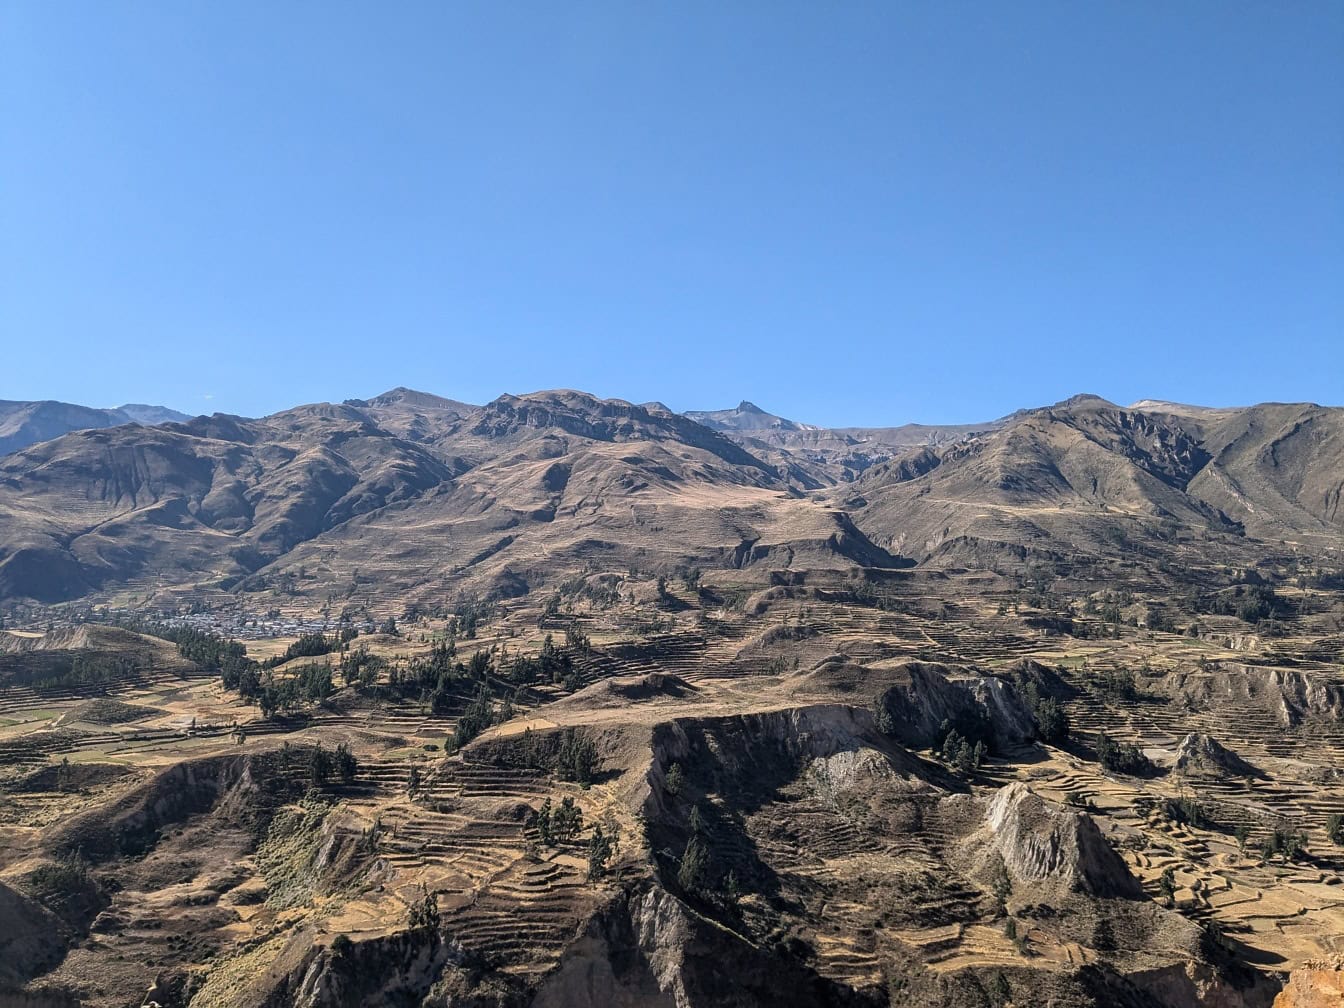 Krajobraz doliny ze wzgórzami w rejonie kanionu Colca w Peru, malowniczy widok na Amerykę Południową